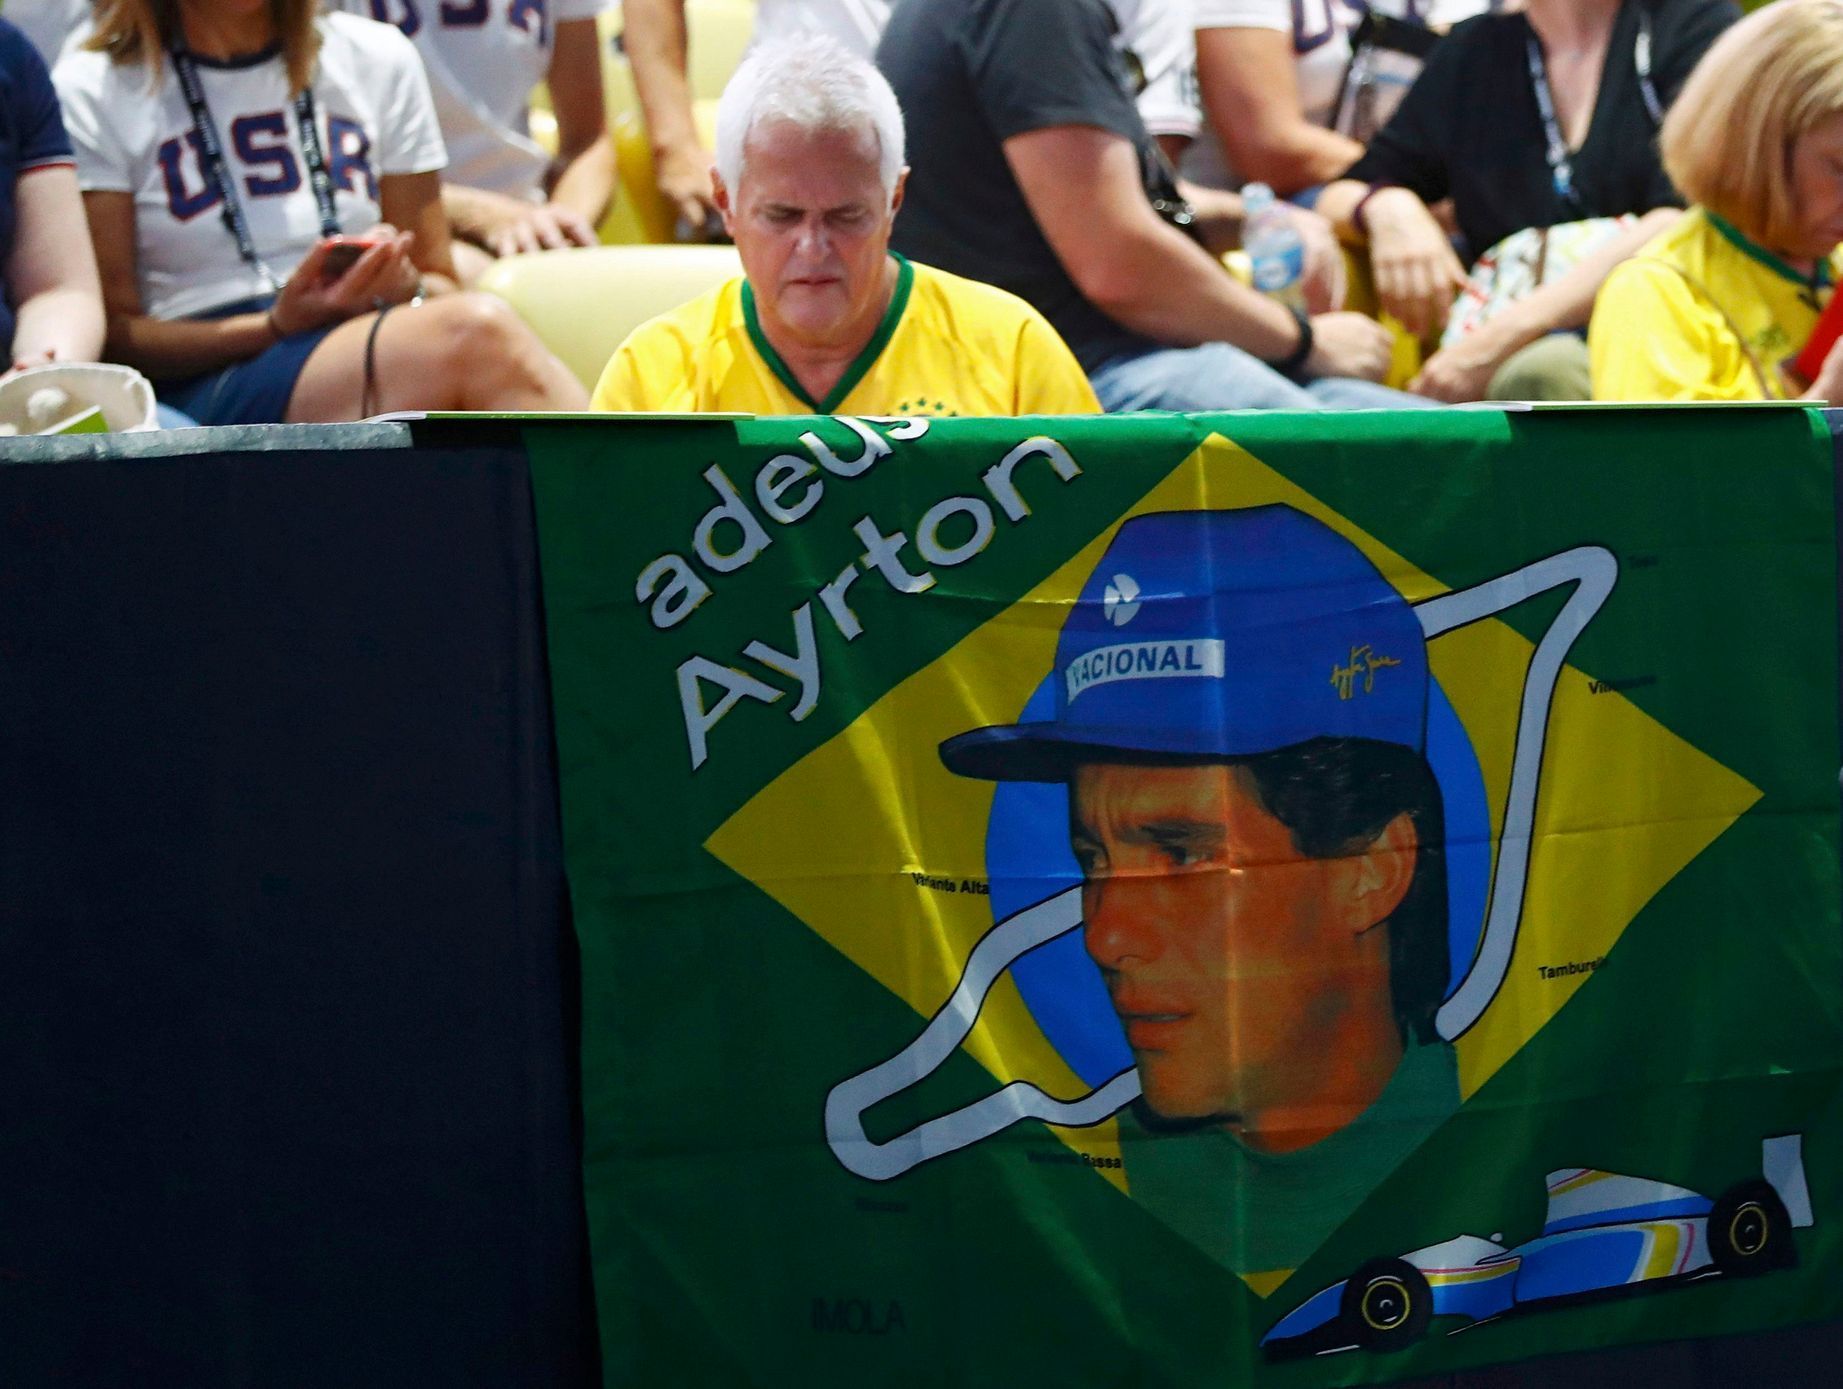 OH 2016, slavnostní zahájení: vlajka Ayrton Senna